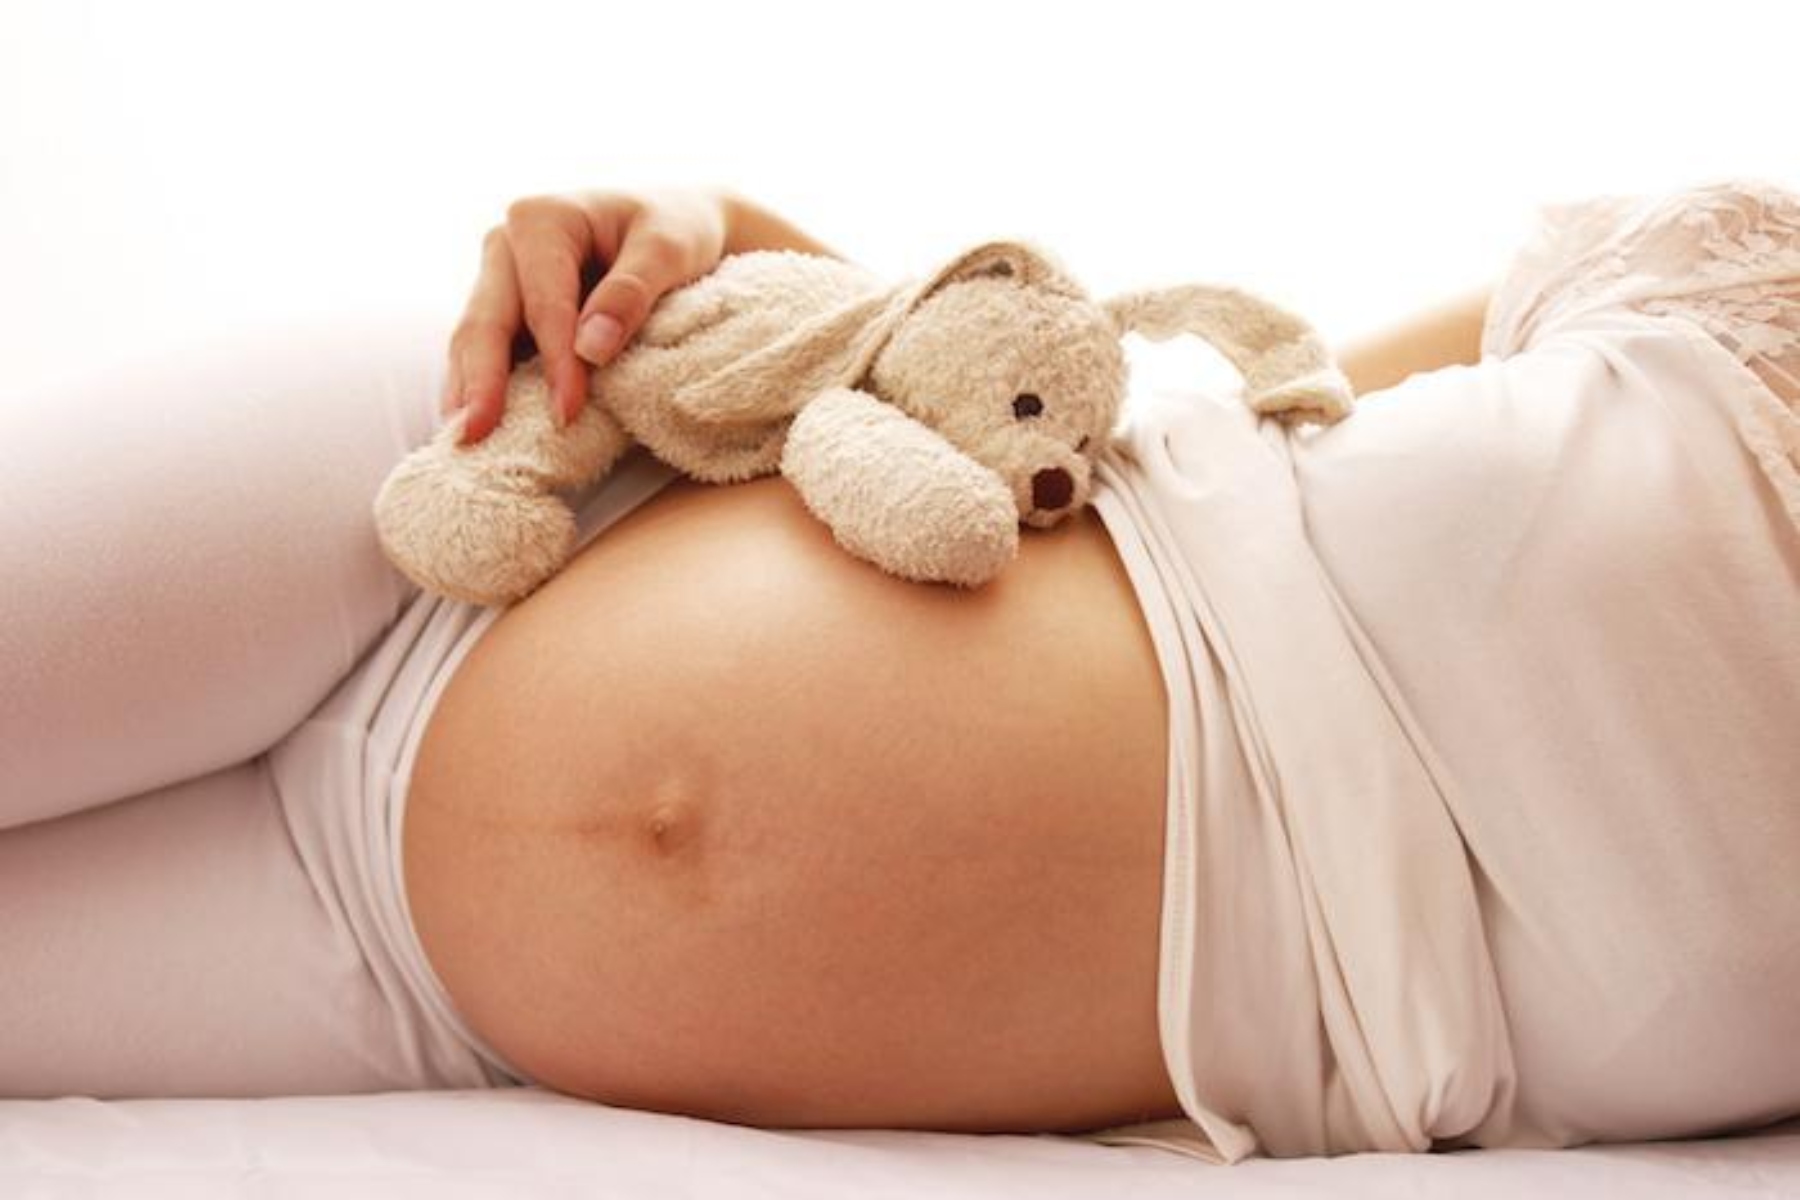 Υγεία μωρού: 9 στις 10 εγκύους έχουν τουλάχιστον έναν δείκτη κινδύνου